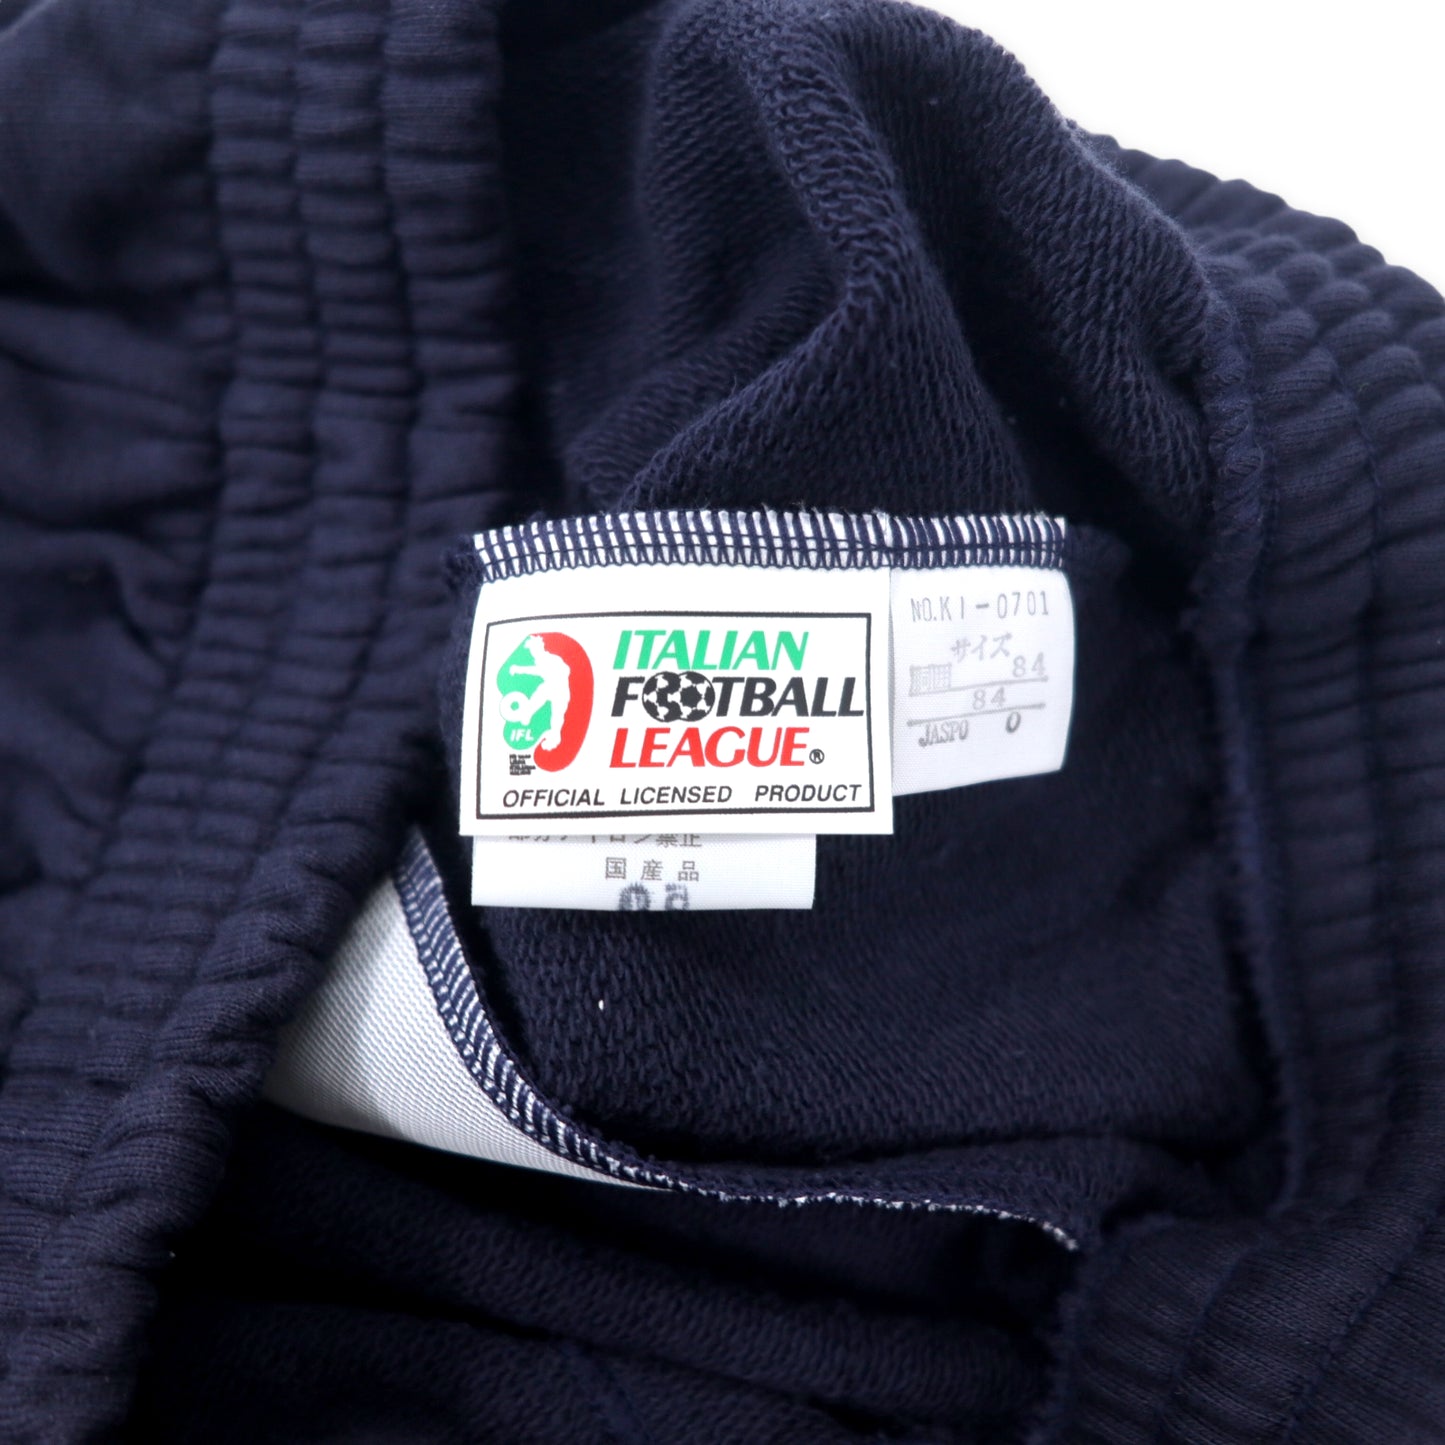 KAPPA 90年代 スウェットパンツ O ネイビー ITALIAN FOOTBALL LEAGE コットン F.C. INTER プリント 日本製 未使用品